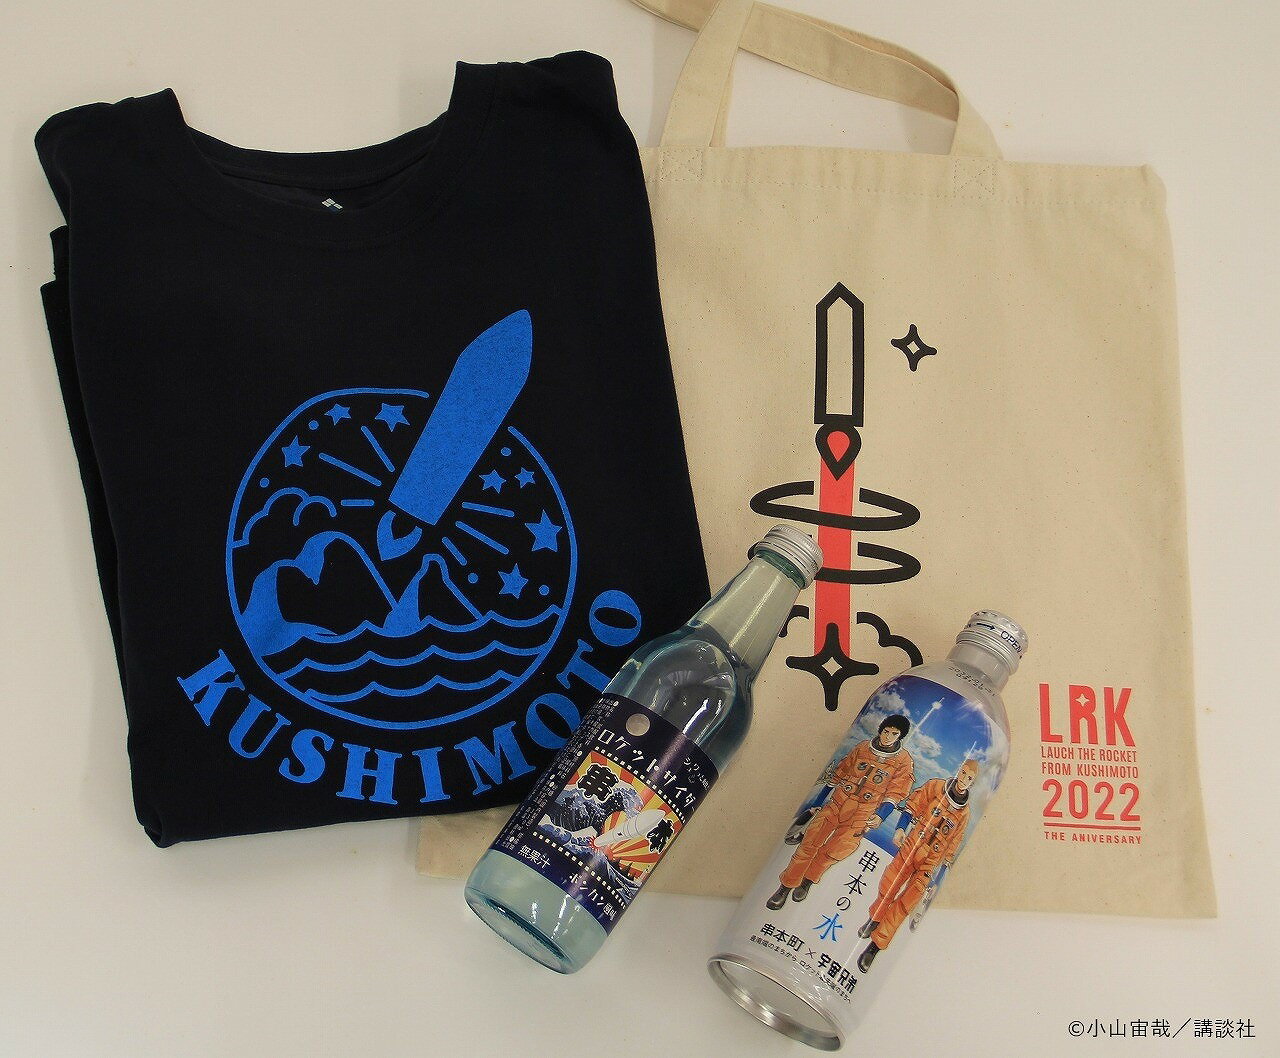 串本ロケットCセット[Tシャツサイズが選べます!]宇宙兄弟コラボラベル「串本の水」、串本町公式ロゴ入りのモンベル社製Tシャツも入ってます。